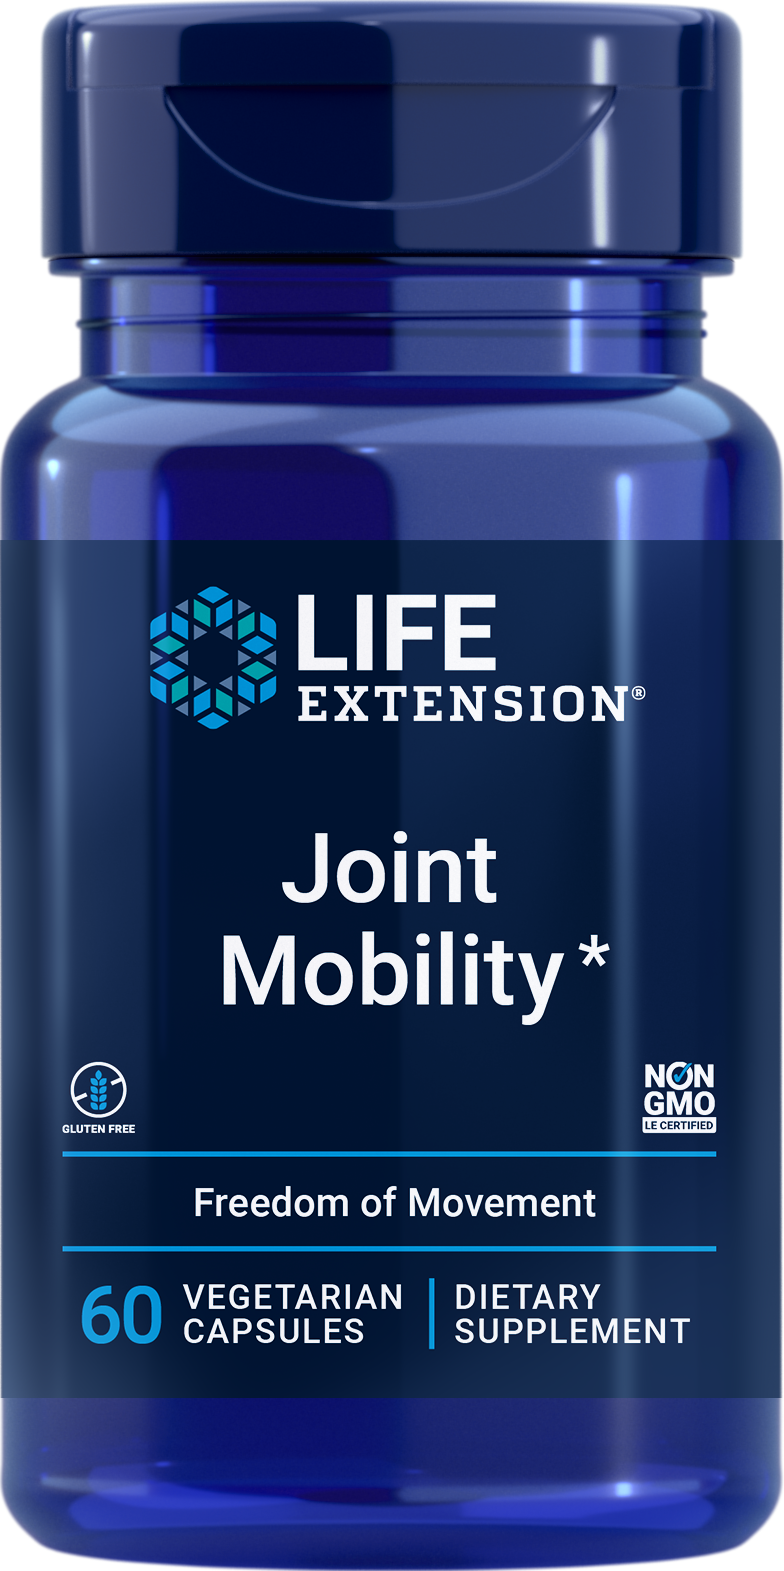 Life Extension Joint Mobility, 60 cápsulas vegetarianas para inhibir la inflamación y apoyar la movilidad y comodidad de las articulaciones.